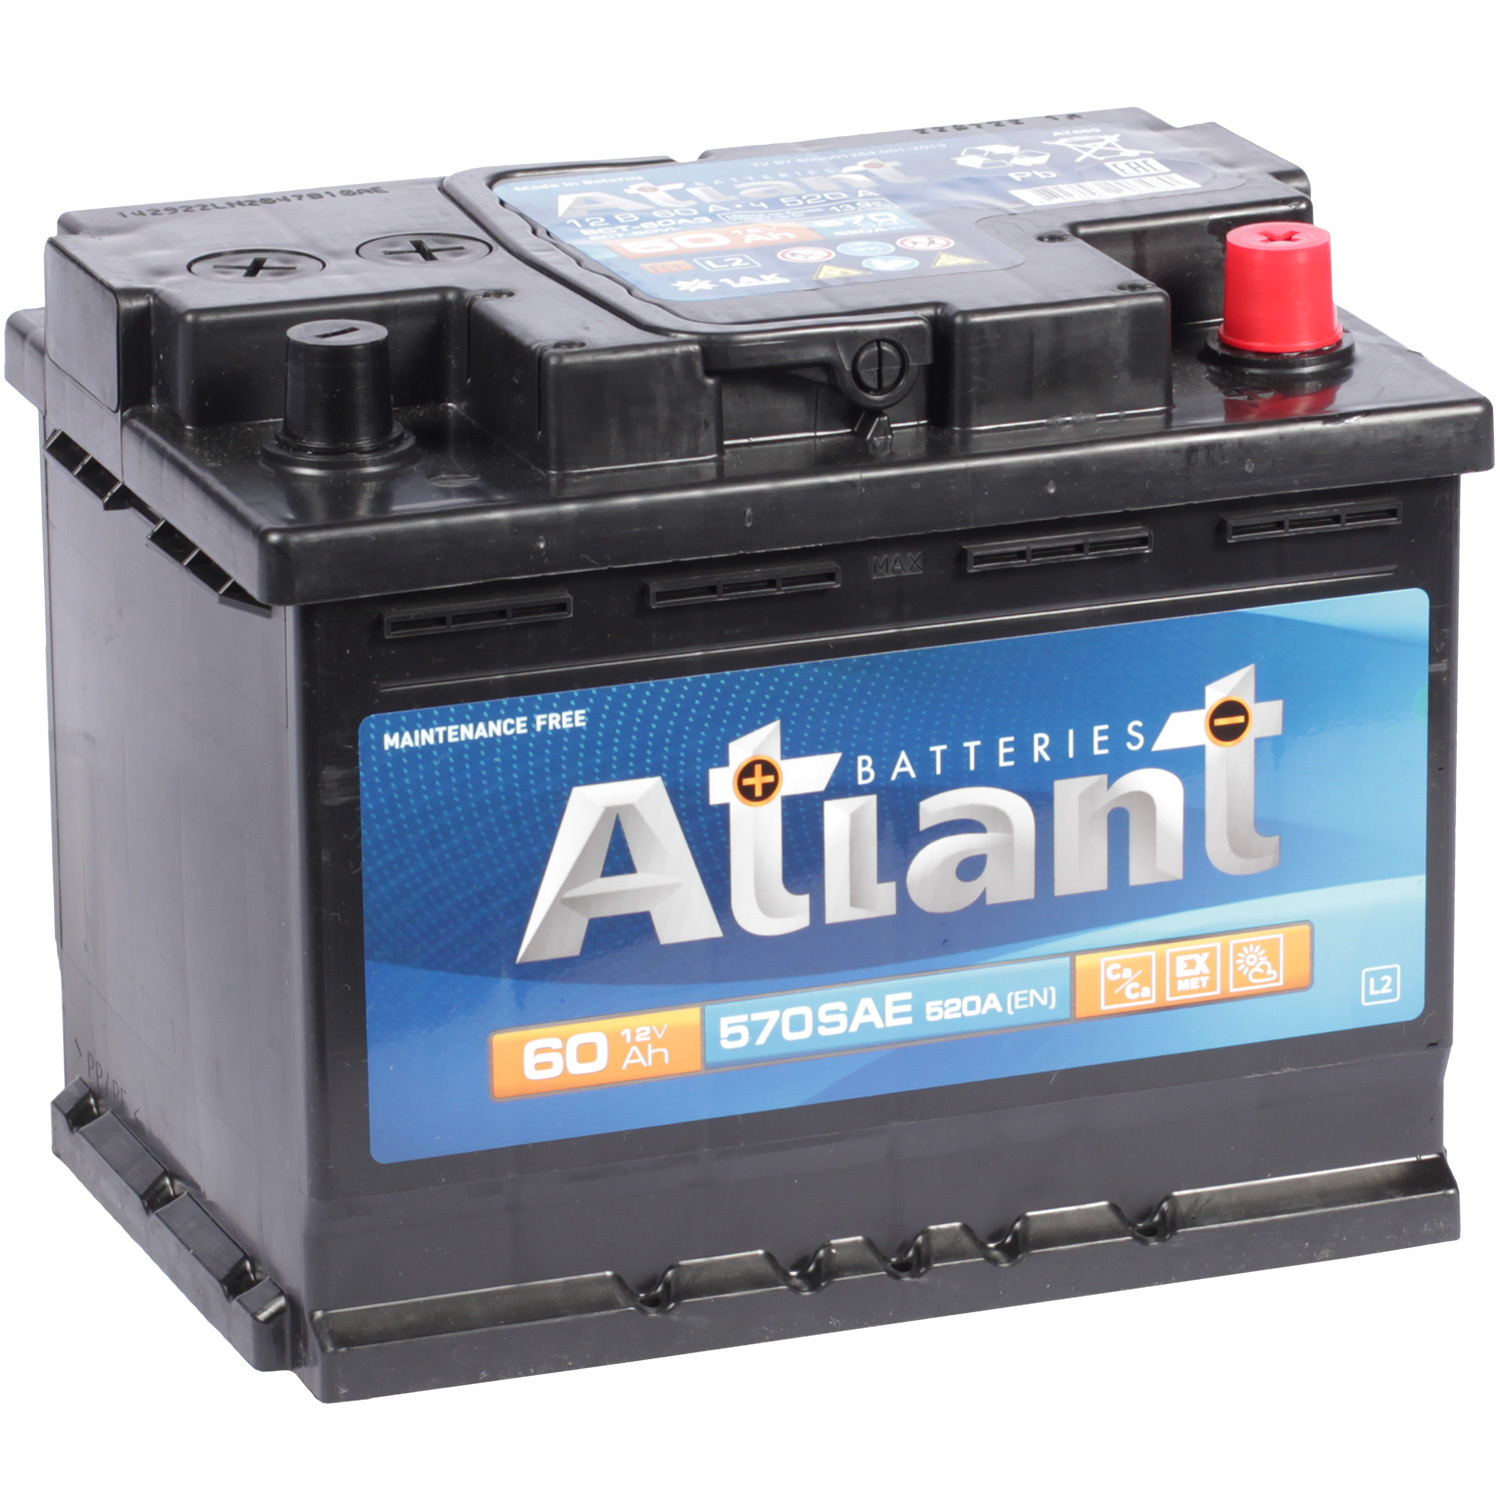 Atlant Автомобильный аккумулятор Atlant 60 Ач обратная полярность L2 atlant автомобильный аккумулятор atlant 75 ач обратная полярность l3